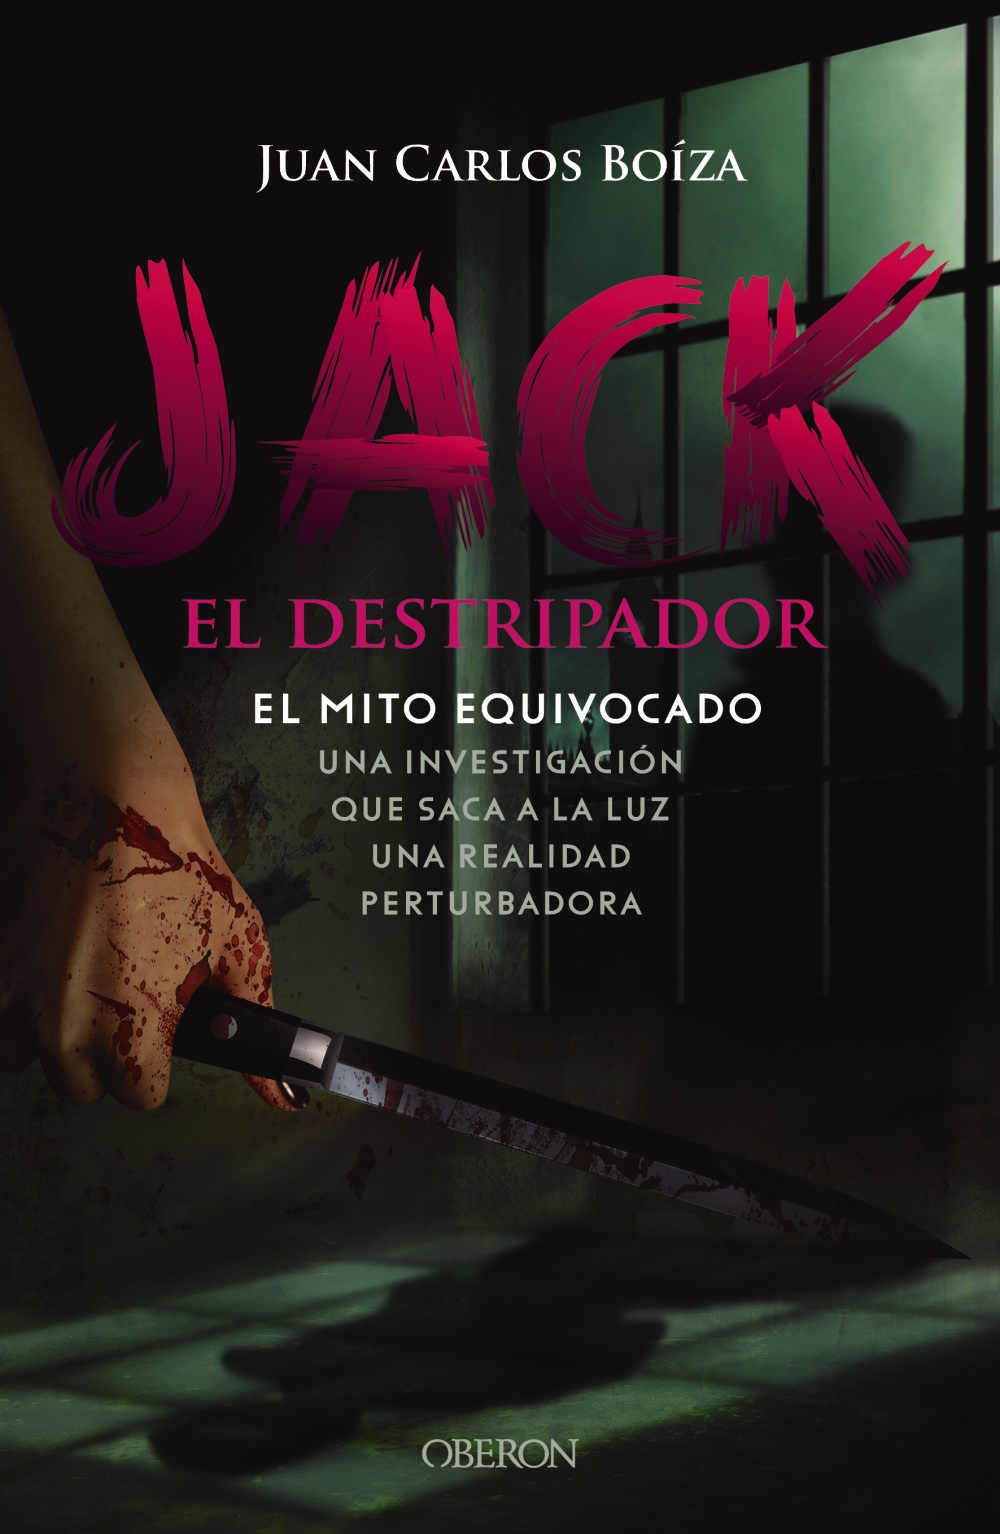 jack-el-destripador-el-mito-equivocado-978-84-415-4510-6.jpg